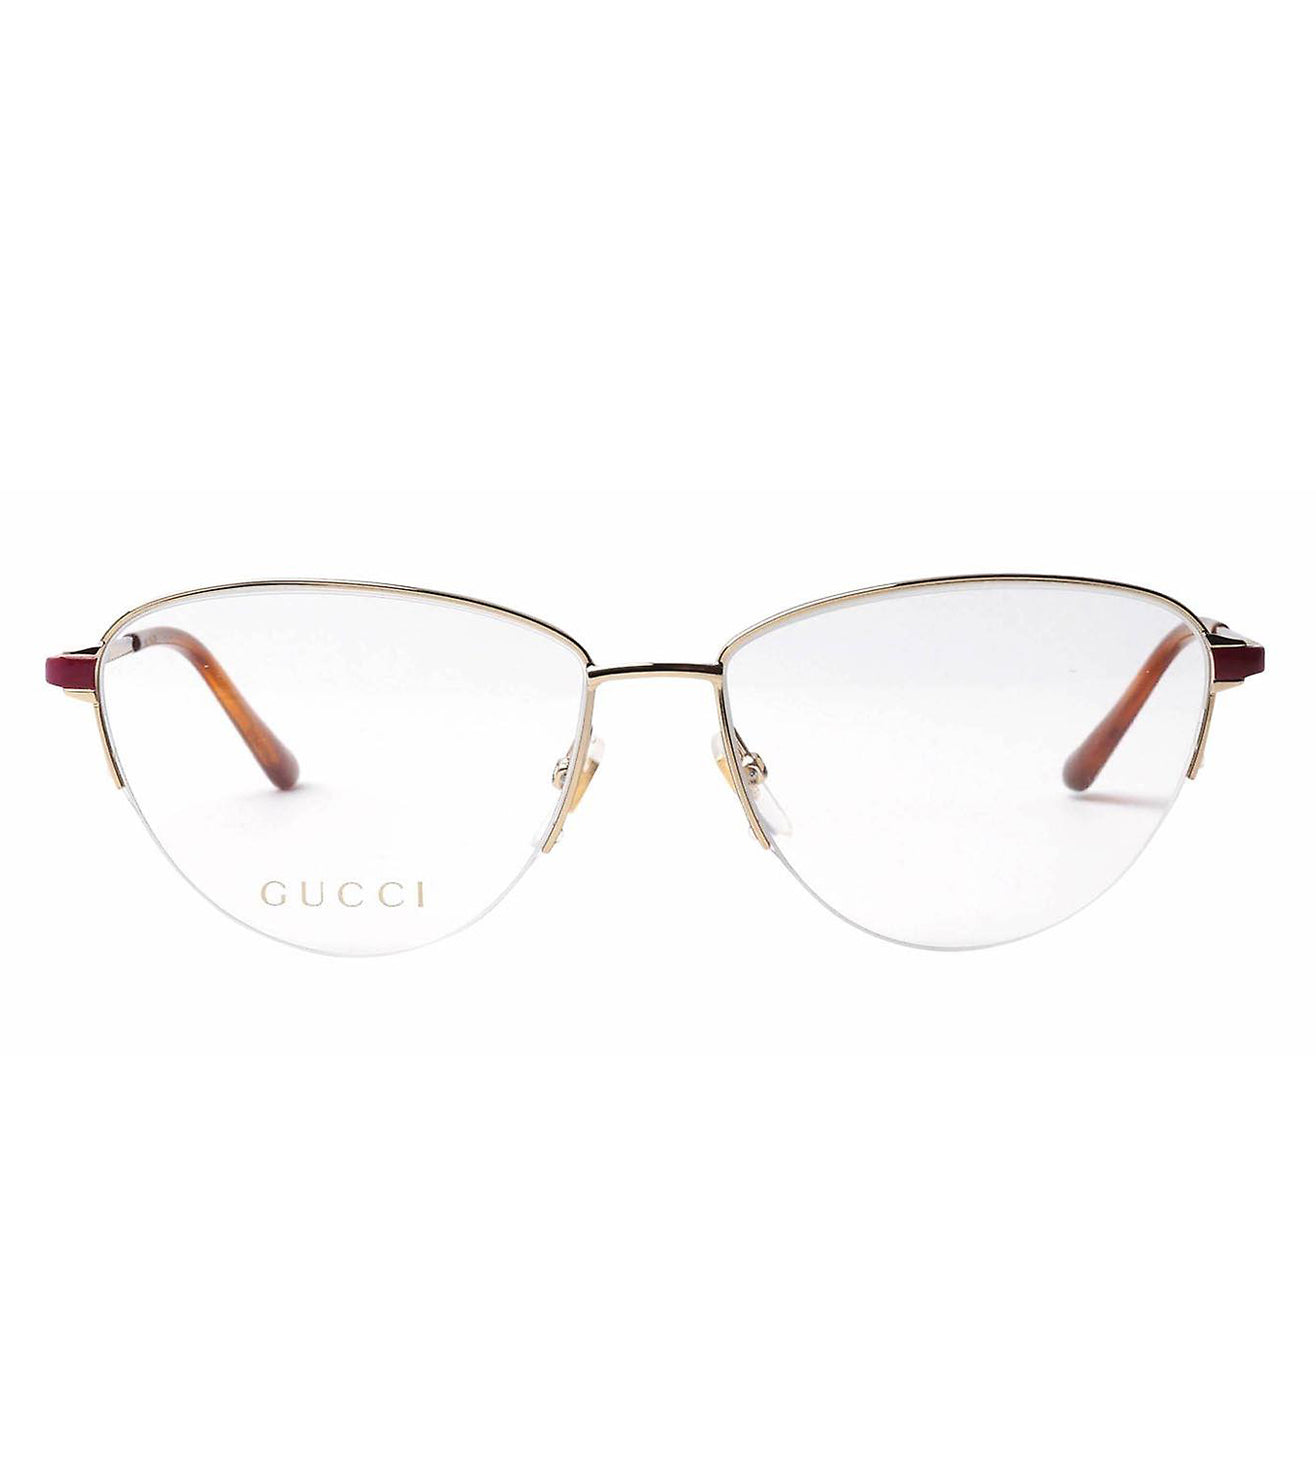 Gucci Women's Gold Cat-eye Optical Frames